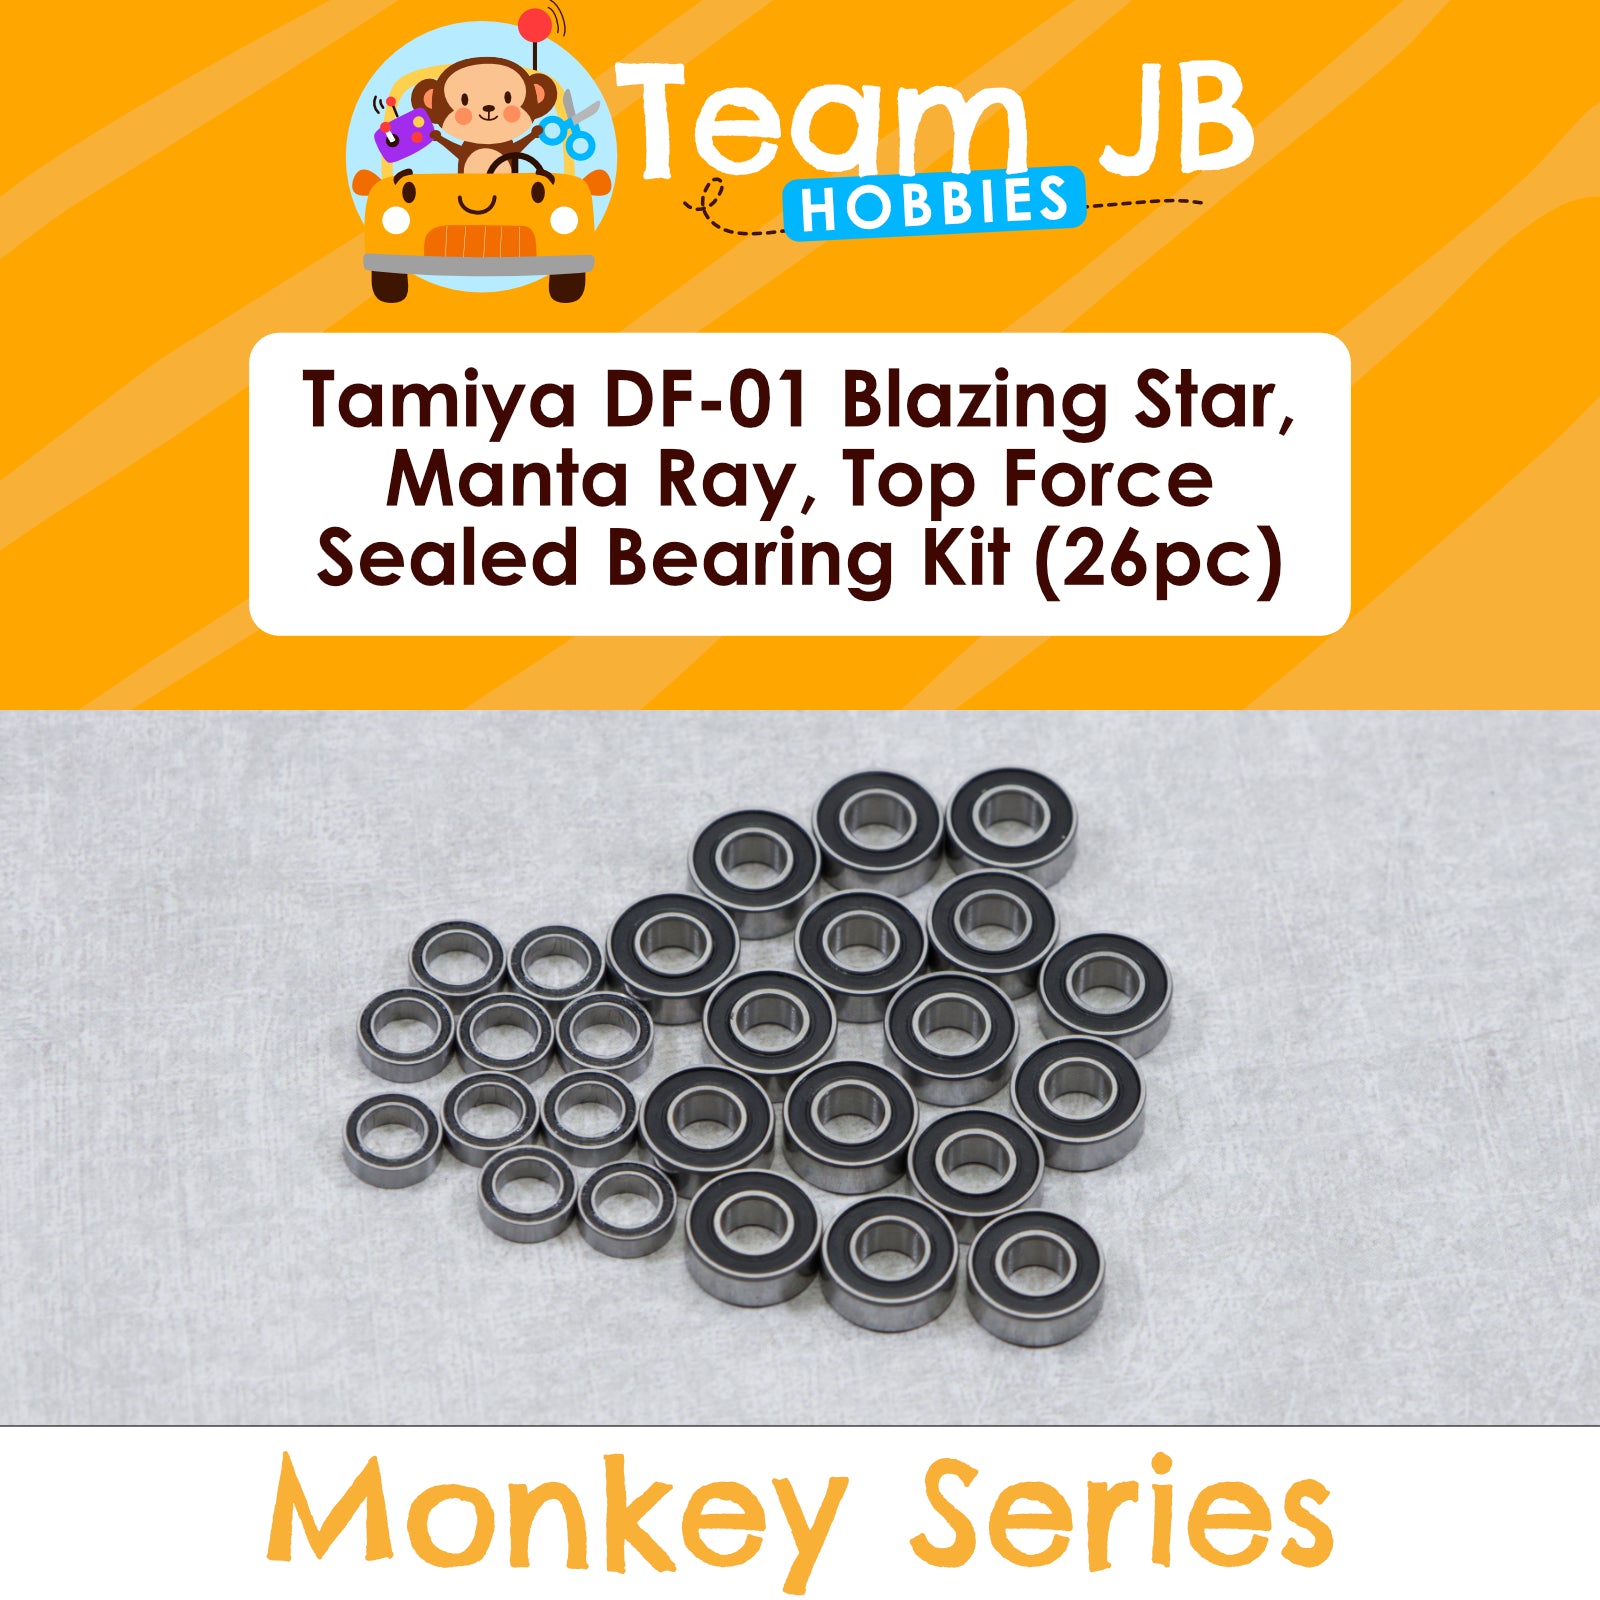 Tamiya DF-01 Blazing Star, Manta Ray, Top Force - Sealed Bearing Kit